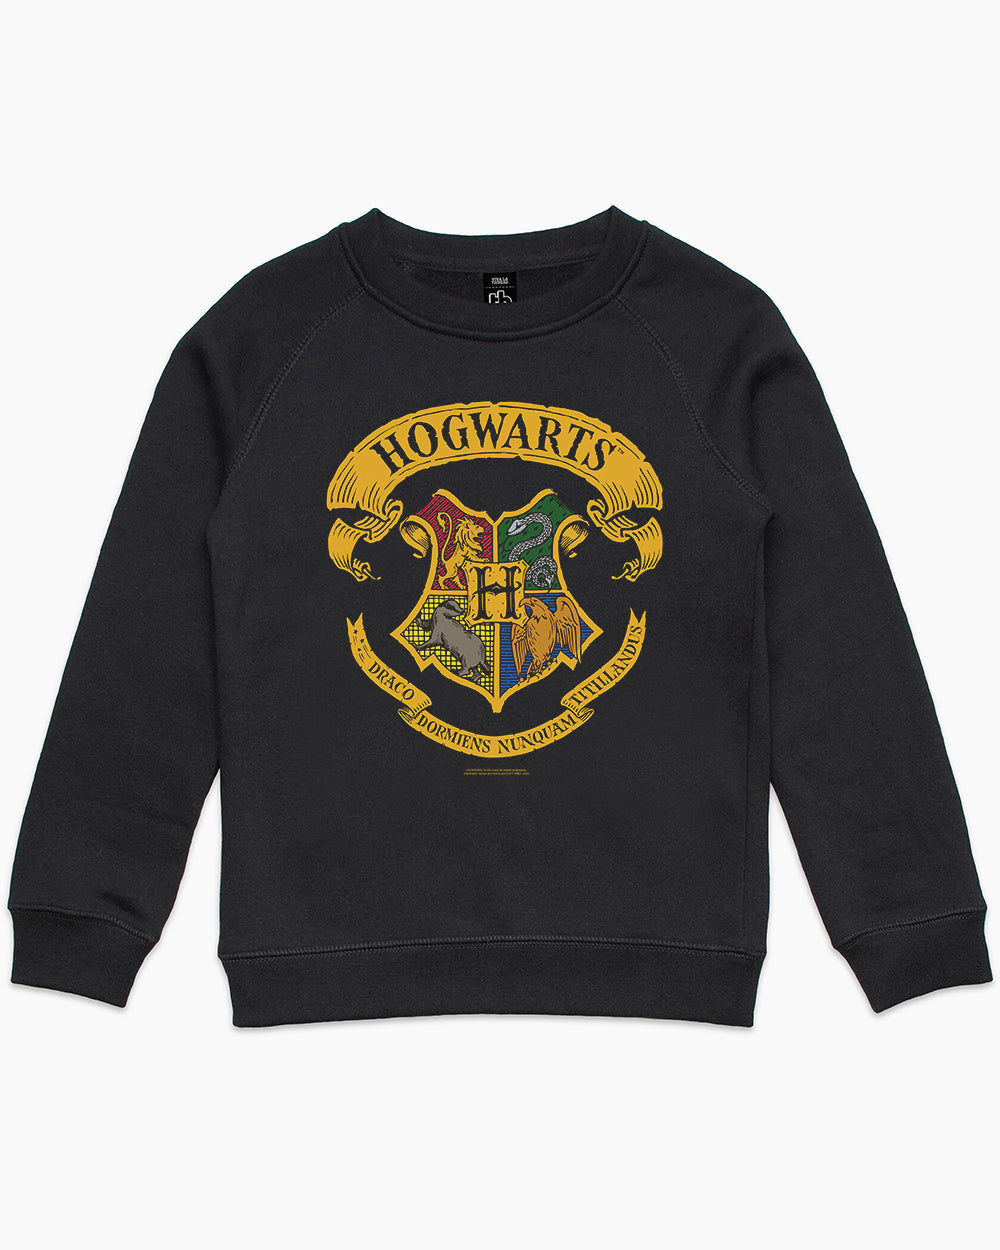 Hoodie Official Threadheads Kids | Europe Crest Merch Potter Harry Hogwarts |